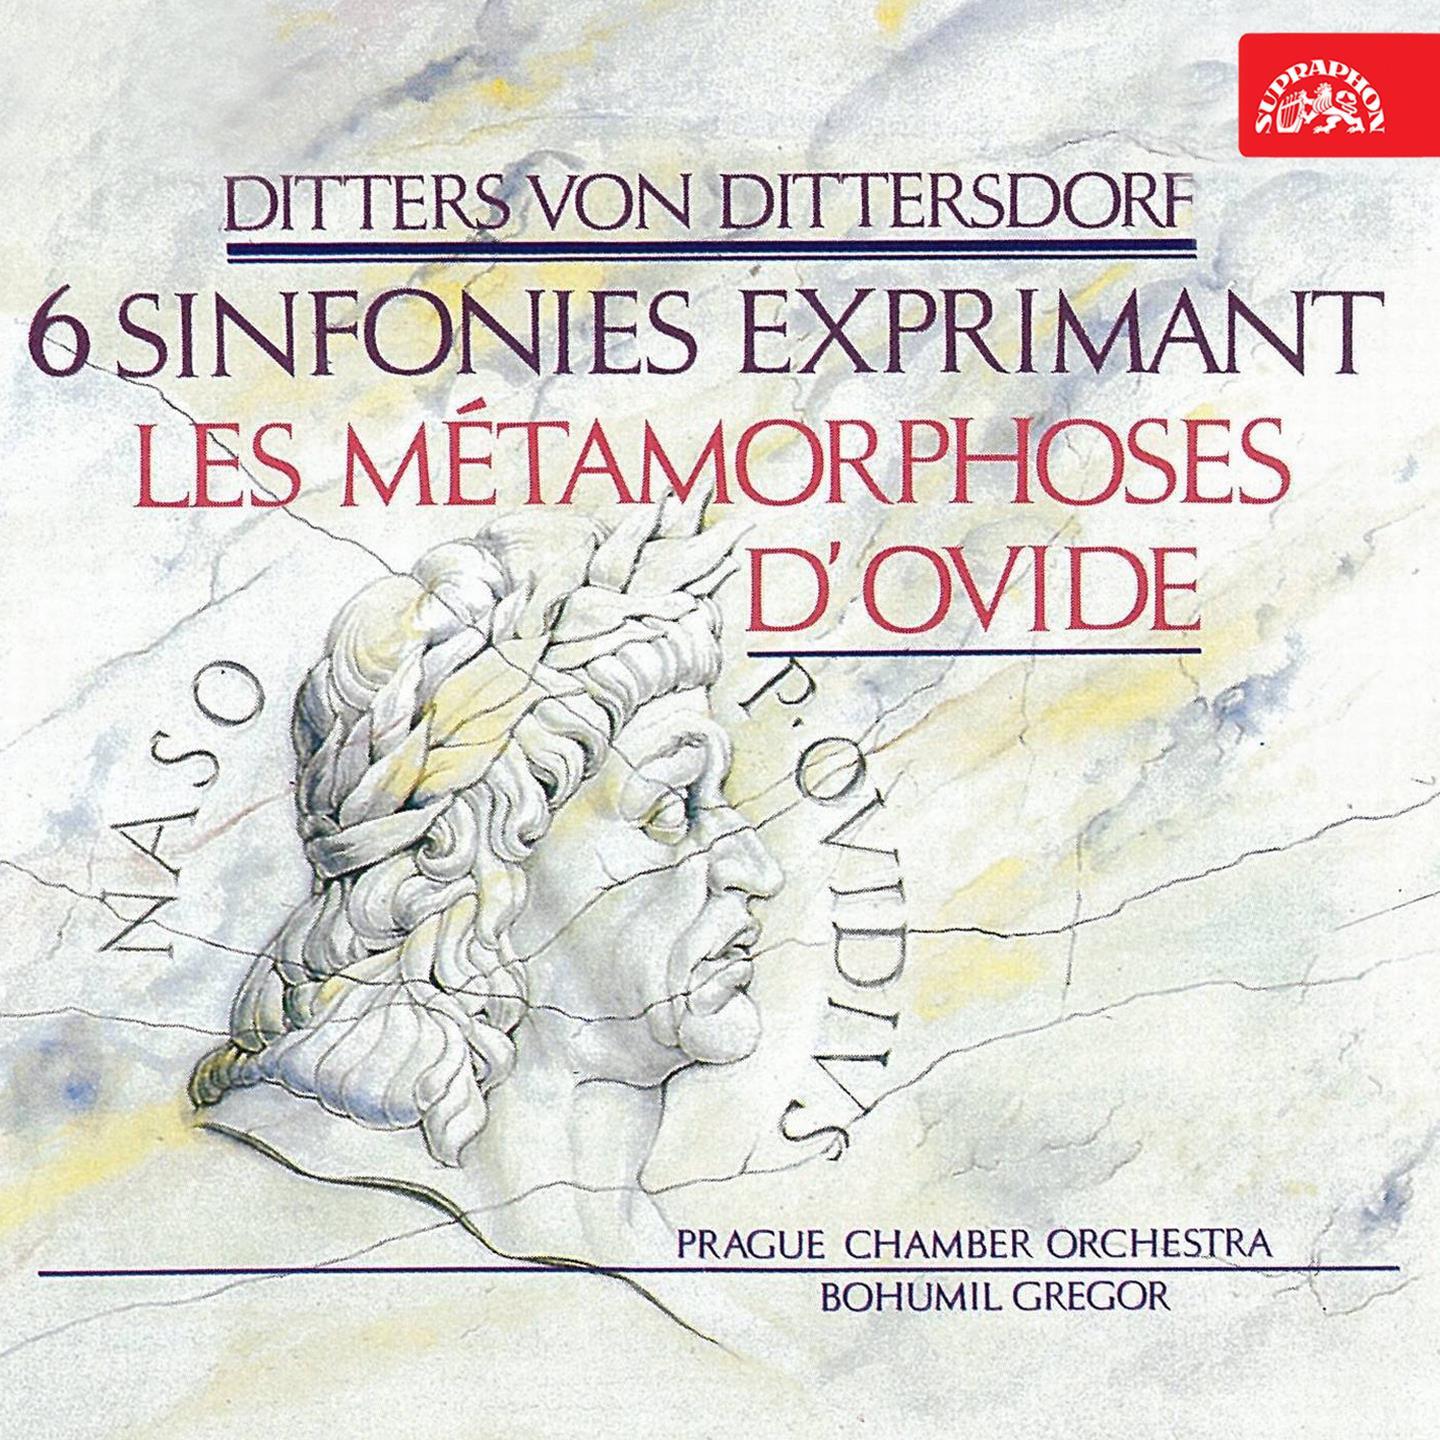 Symphonies After Ovid' s Metamorphoses, No. 6 in A Major, Kr. 78 " Verwandlung der lycischen Bauern in Fr sche": III. Minuetto. Moderato